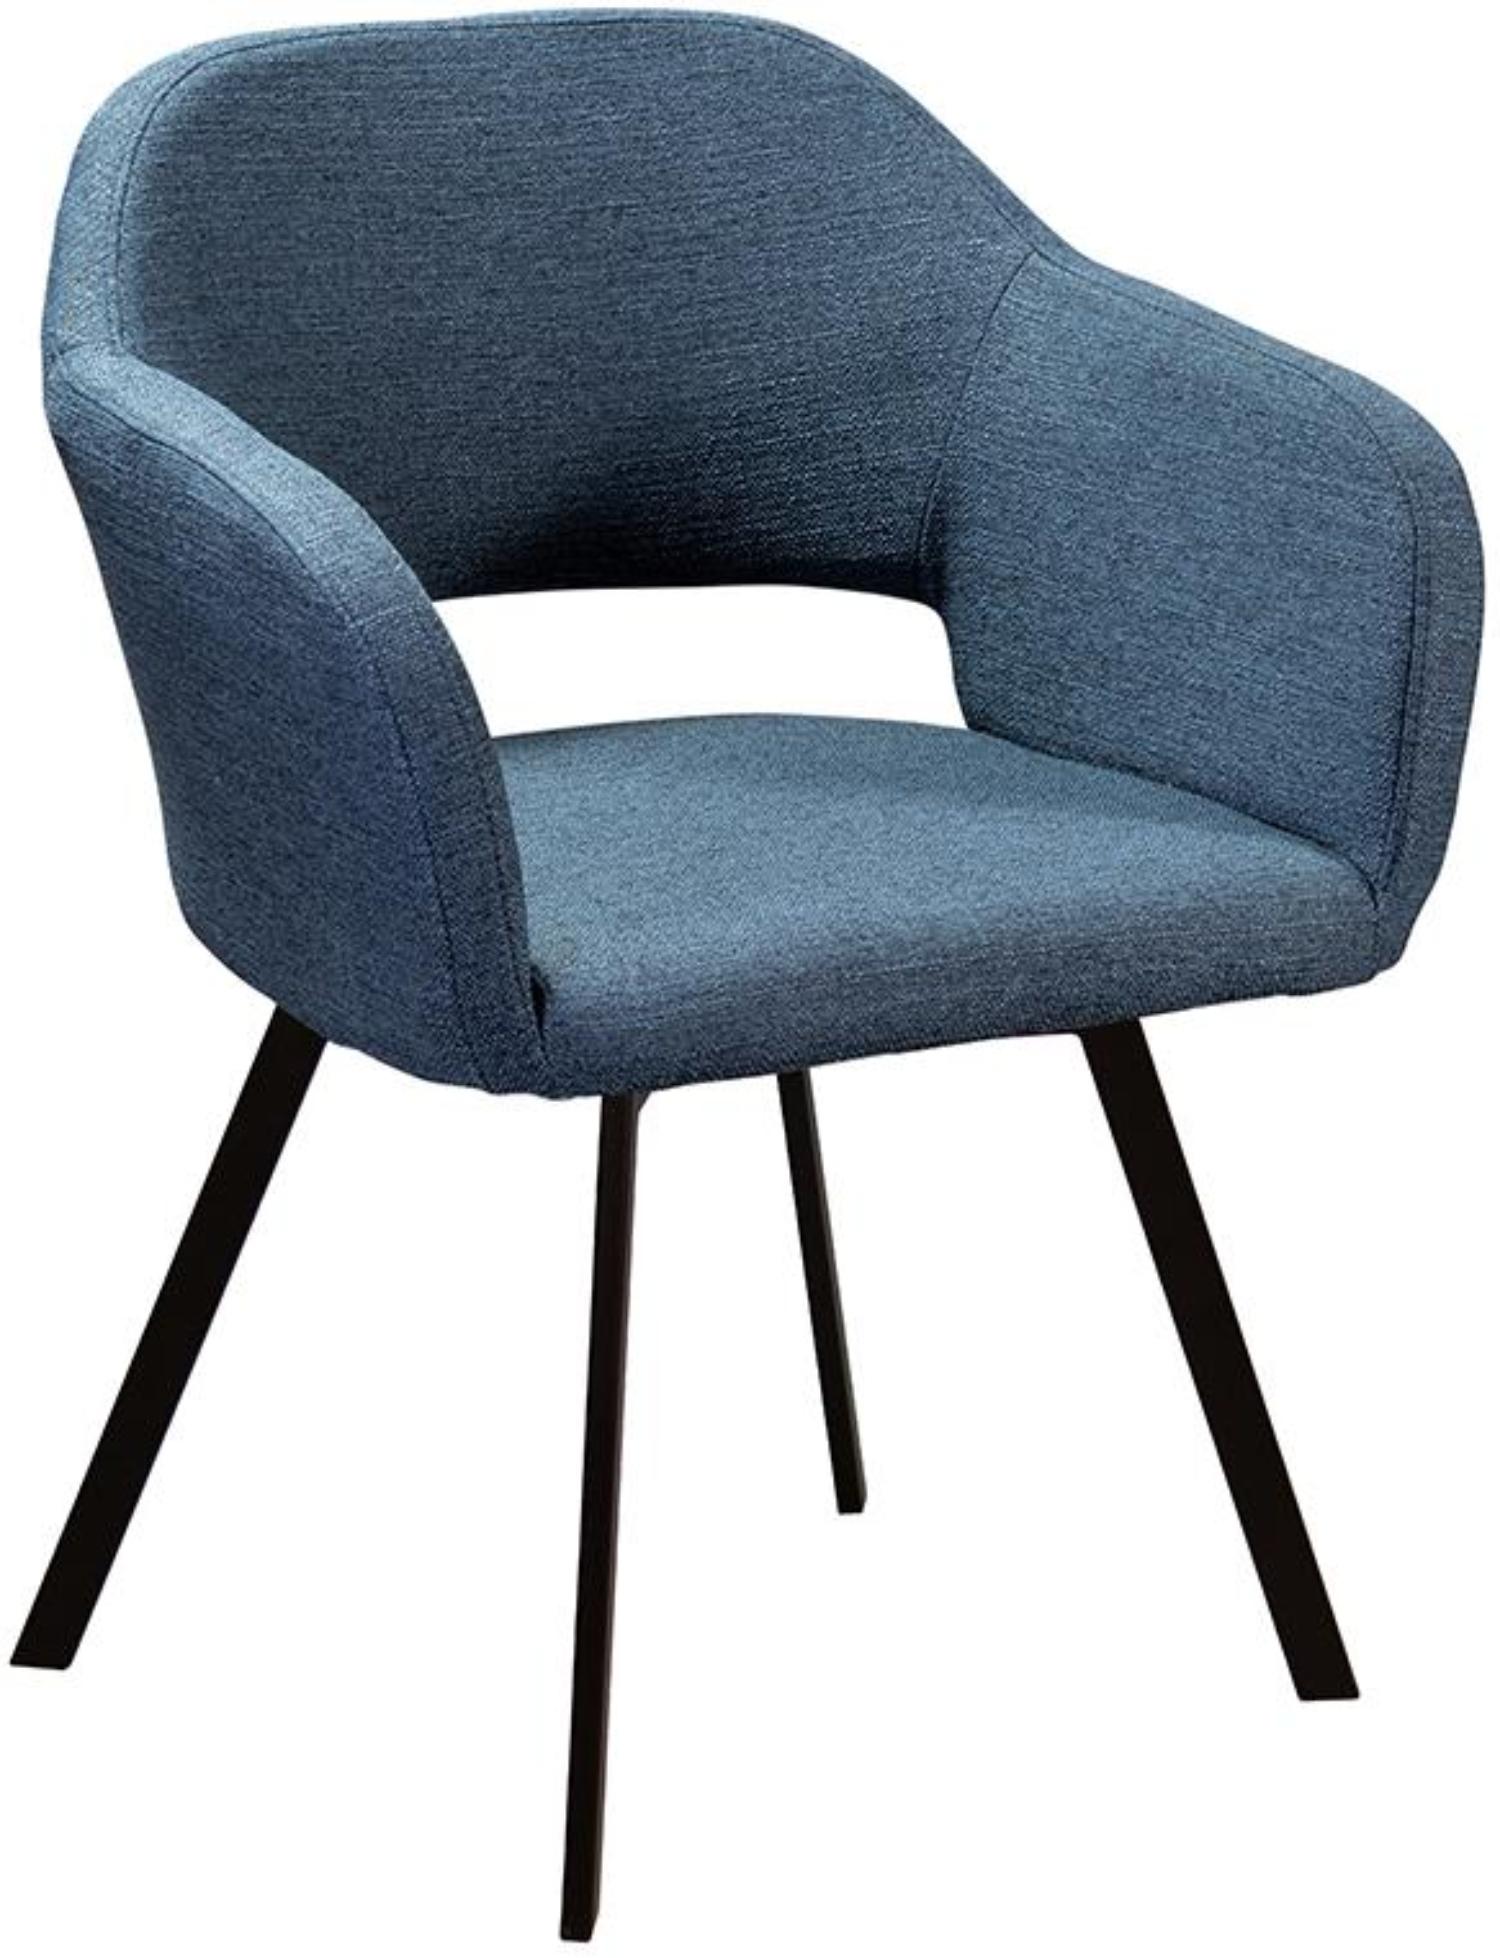 Кресло R-Home Oscar Arki, Сканди, размер 60x59x77.5 см, цвет: Блю Арт(41021851_БлюАртАрки)41021851_БлюАртАрки